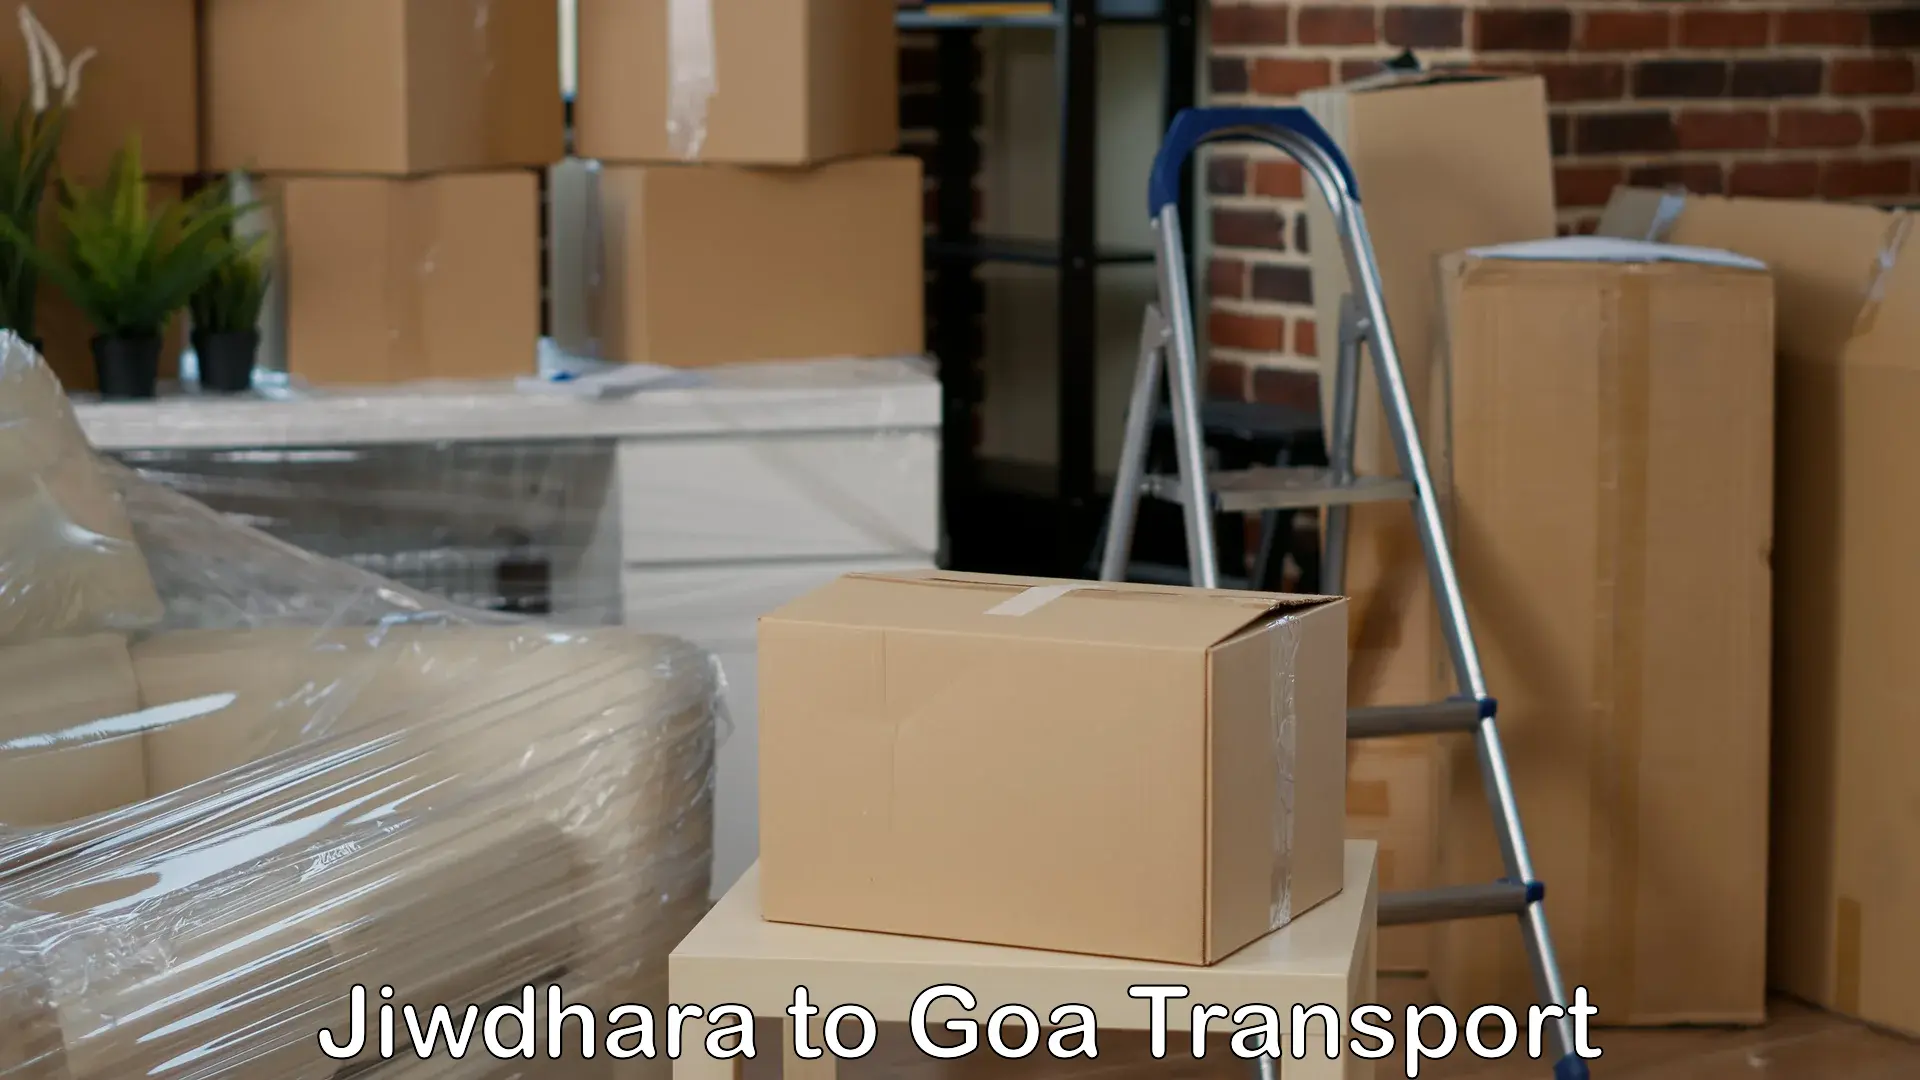 Door to door transport services Jiwdhara to South Goa